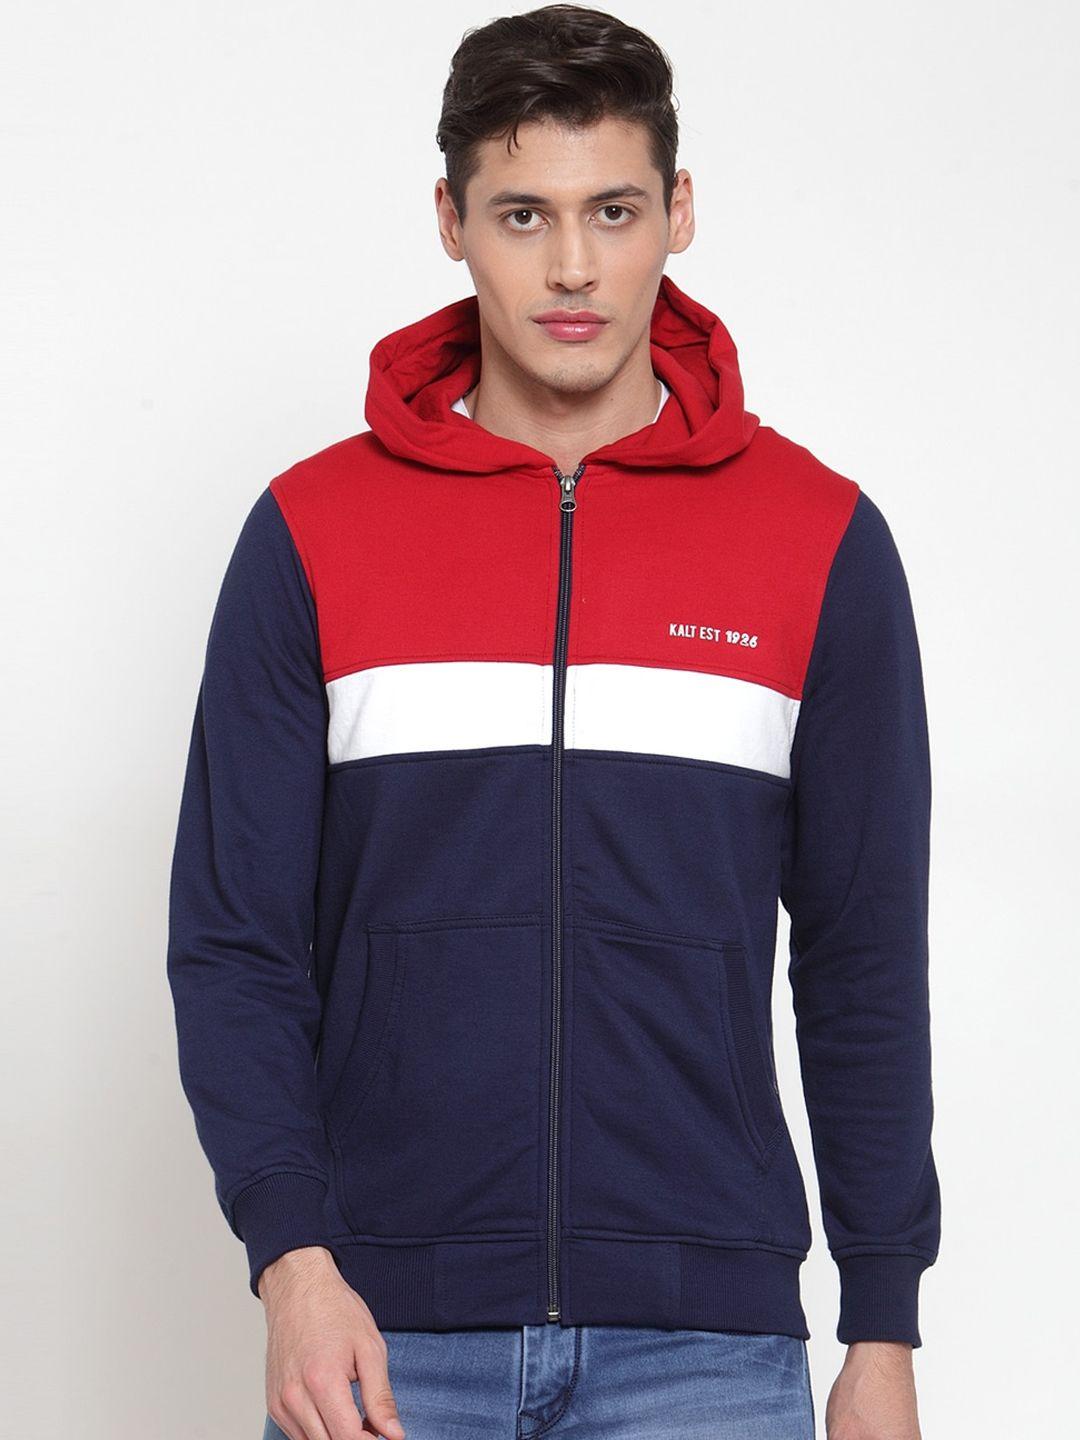 kalt-men-navy-blue-&-red-colourblocked-sporty-jacket